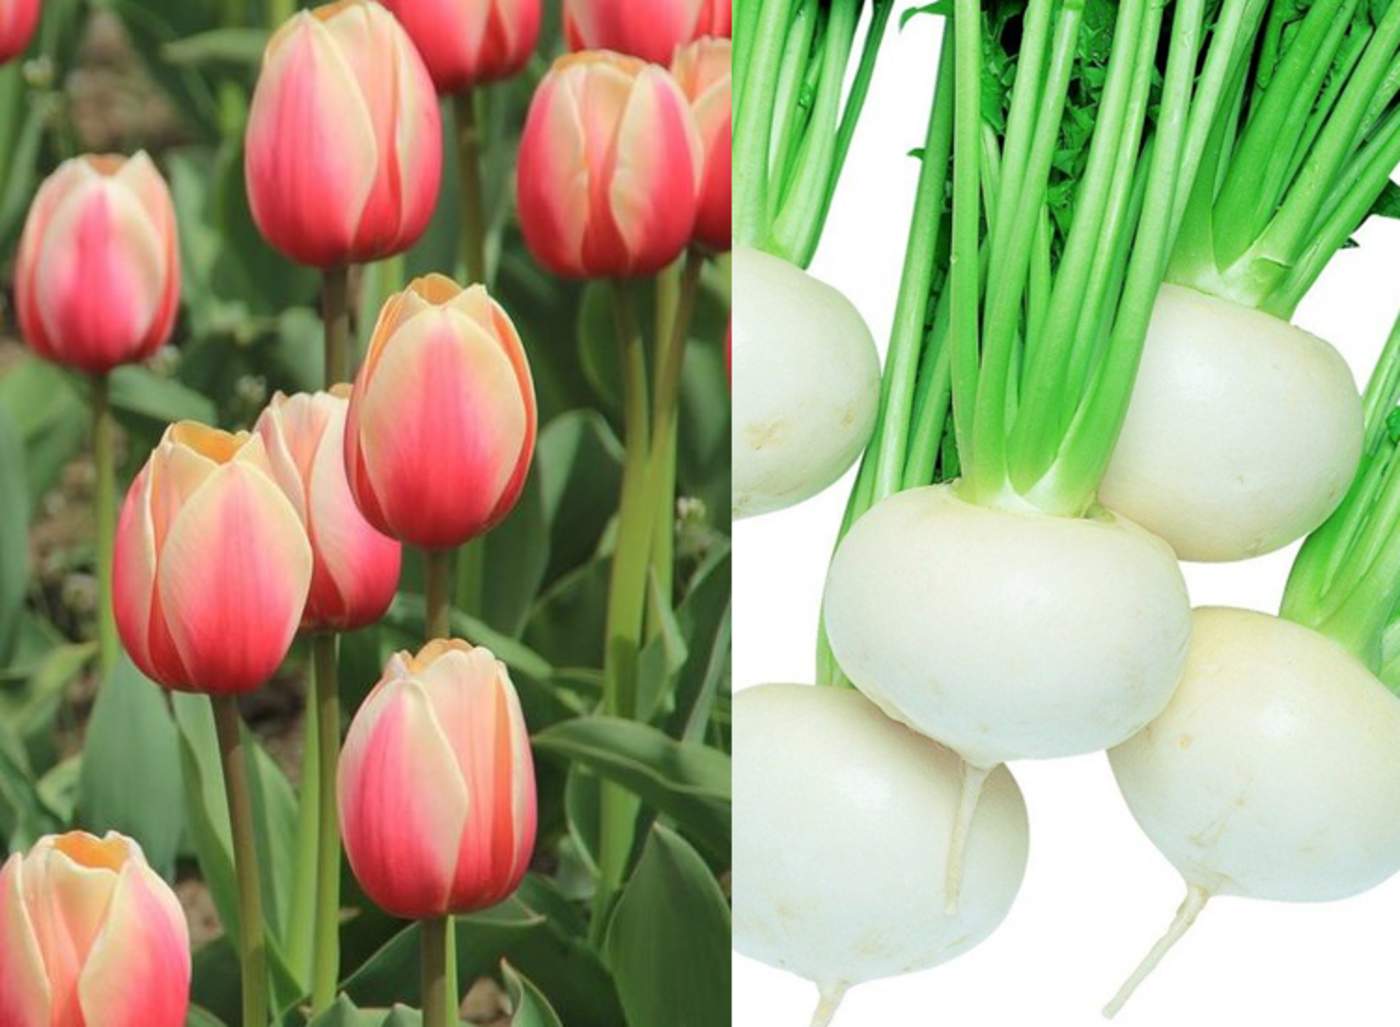 En inglés las palabras suenan similar, tulips (tulipanes), turnips (nabos); de ahí la confusión. (INTERNET)